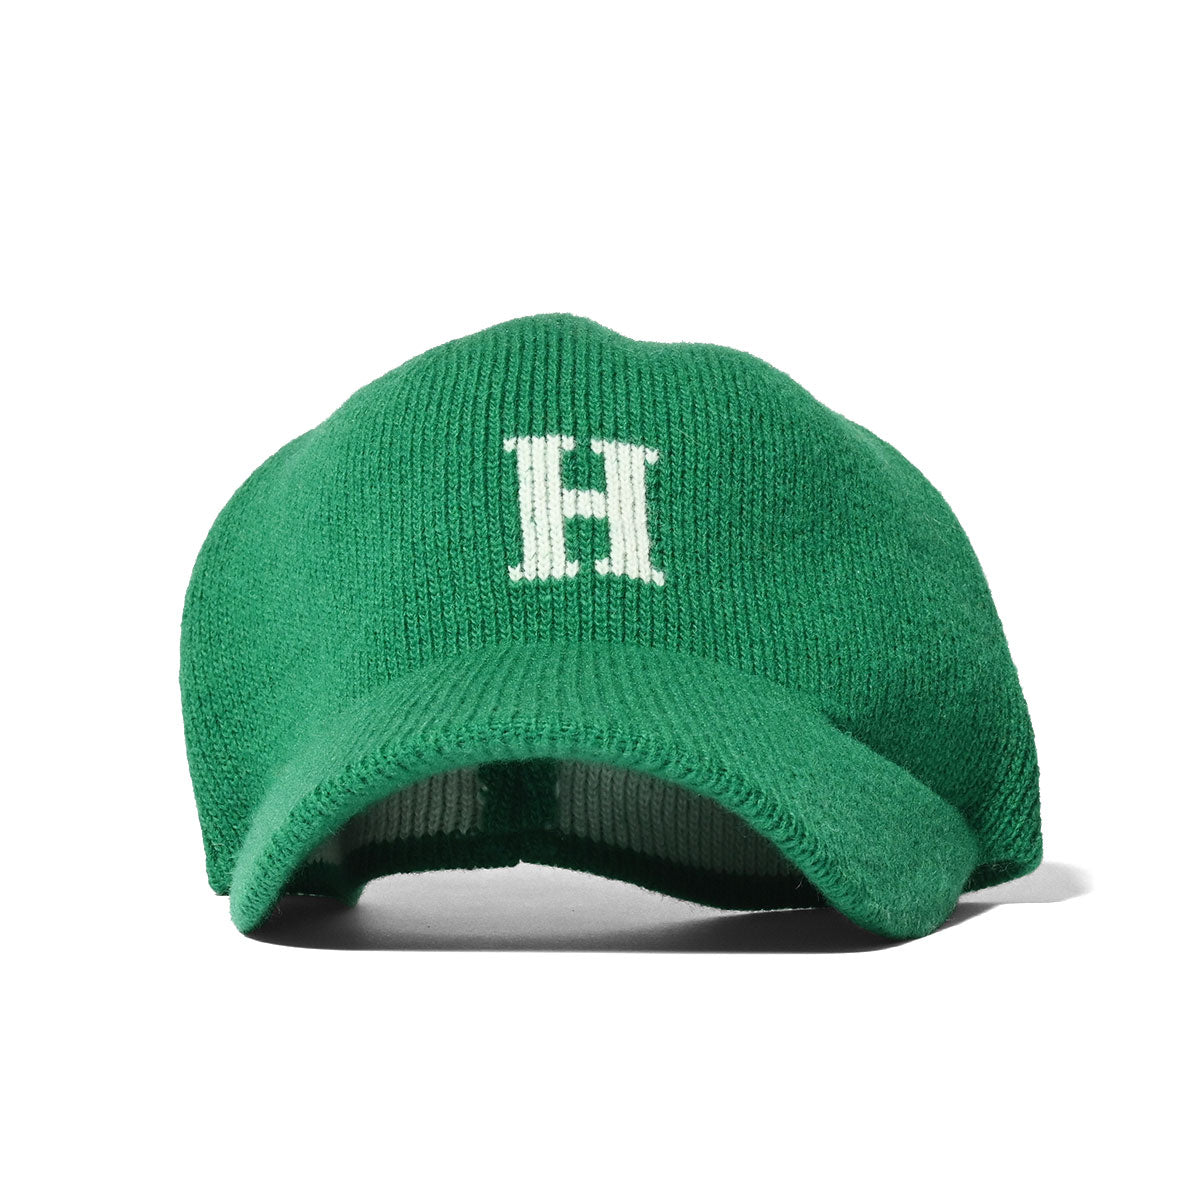 HOMEGAME - H LOGO 針織棒球帽 綠色